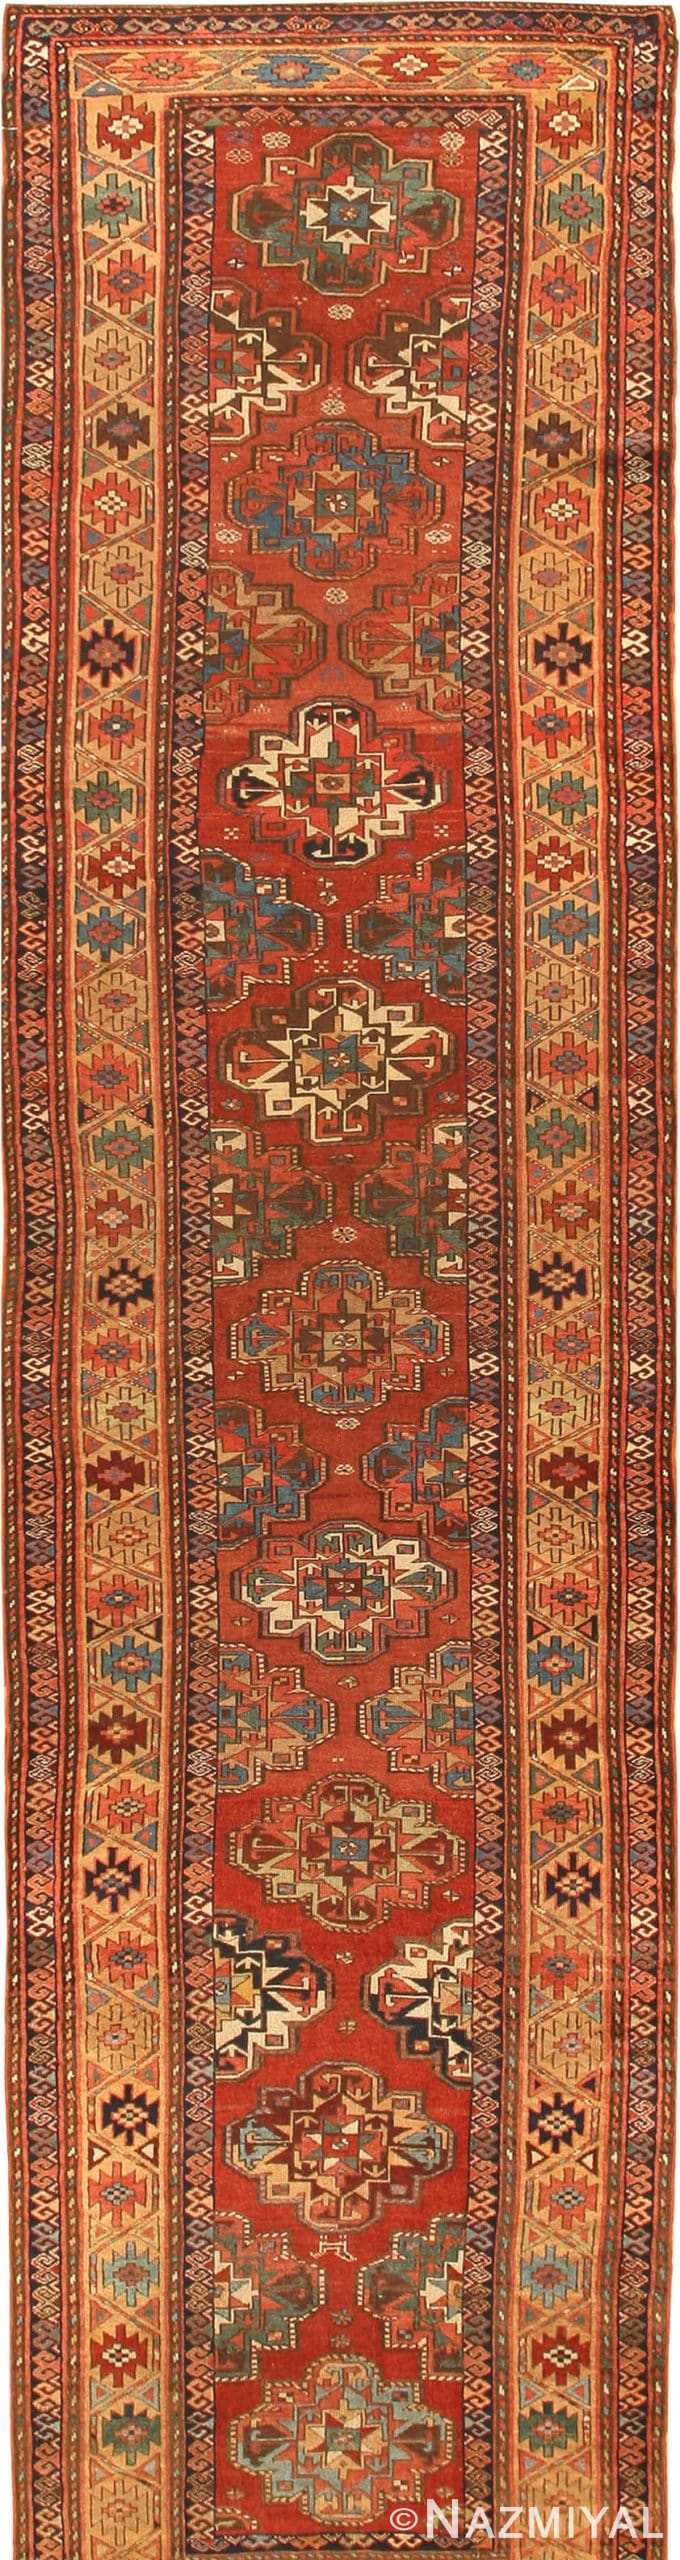 Antique Kurdish Persian Rugs 42291 Detail/Large View